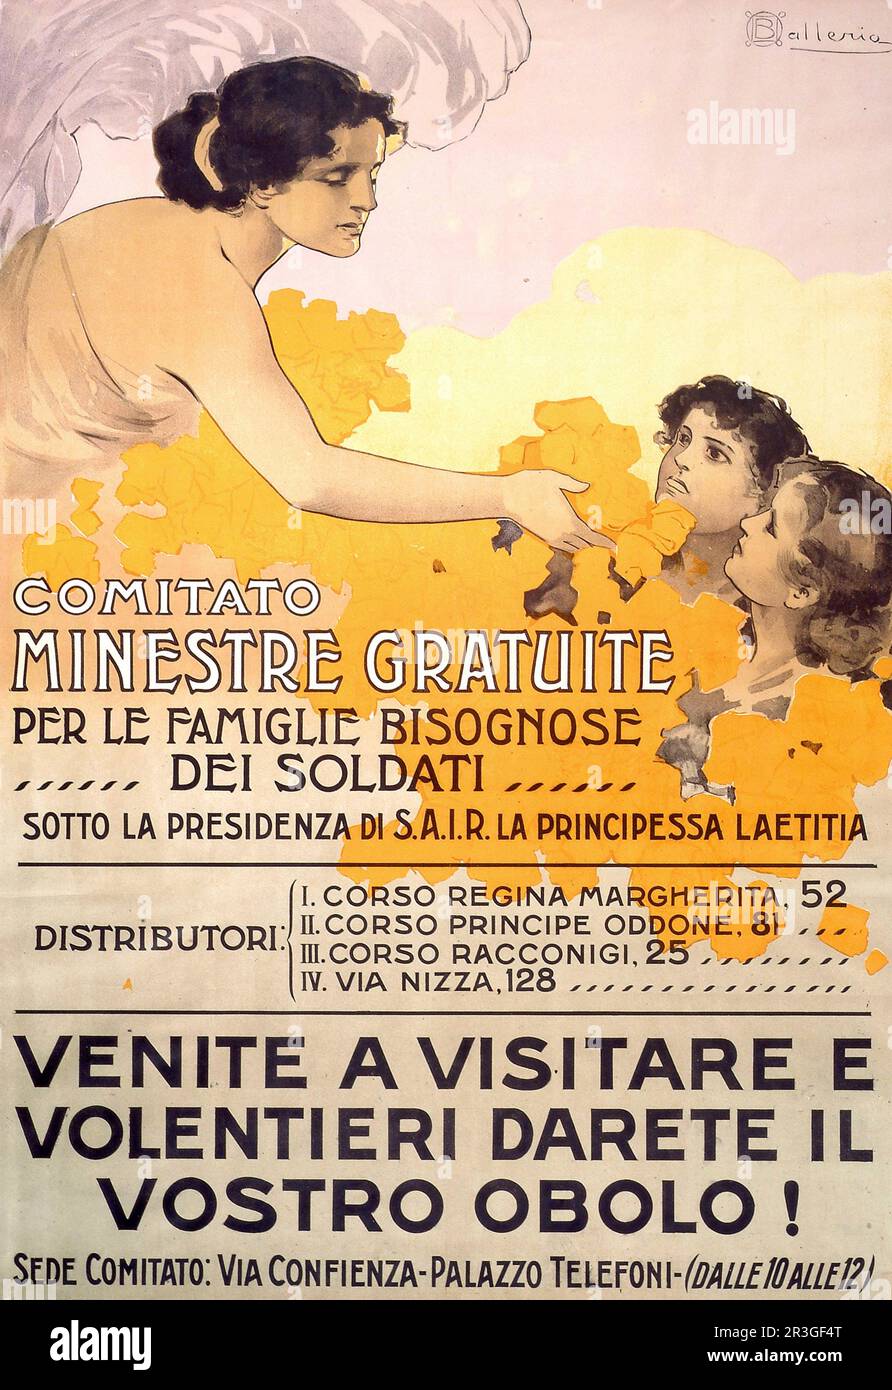 Italienisches Vintage-Plakat aus dem Jahr 1917, auf dem die Arbeit eines Unternehmens in Turin zur kostenlosen Versorgung der Familien der Soldaten geworben wird. Stockfoto